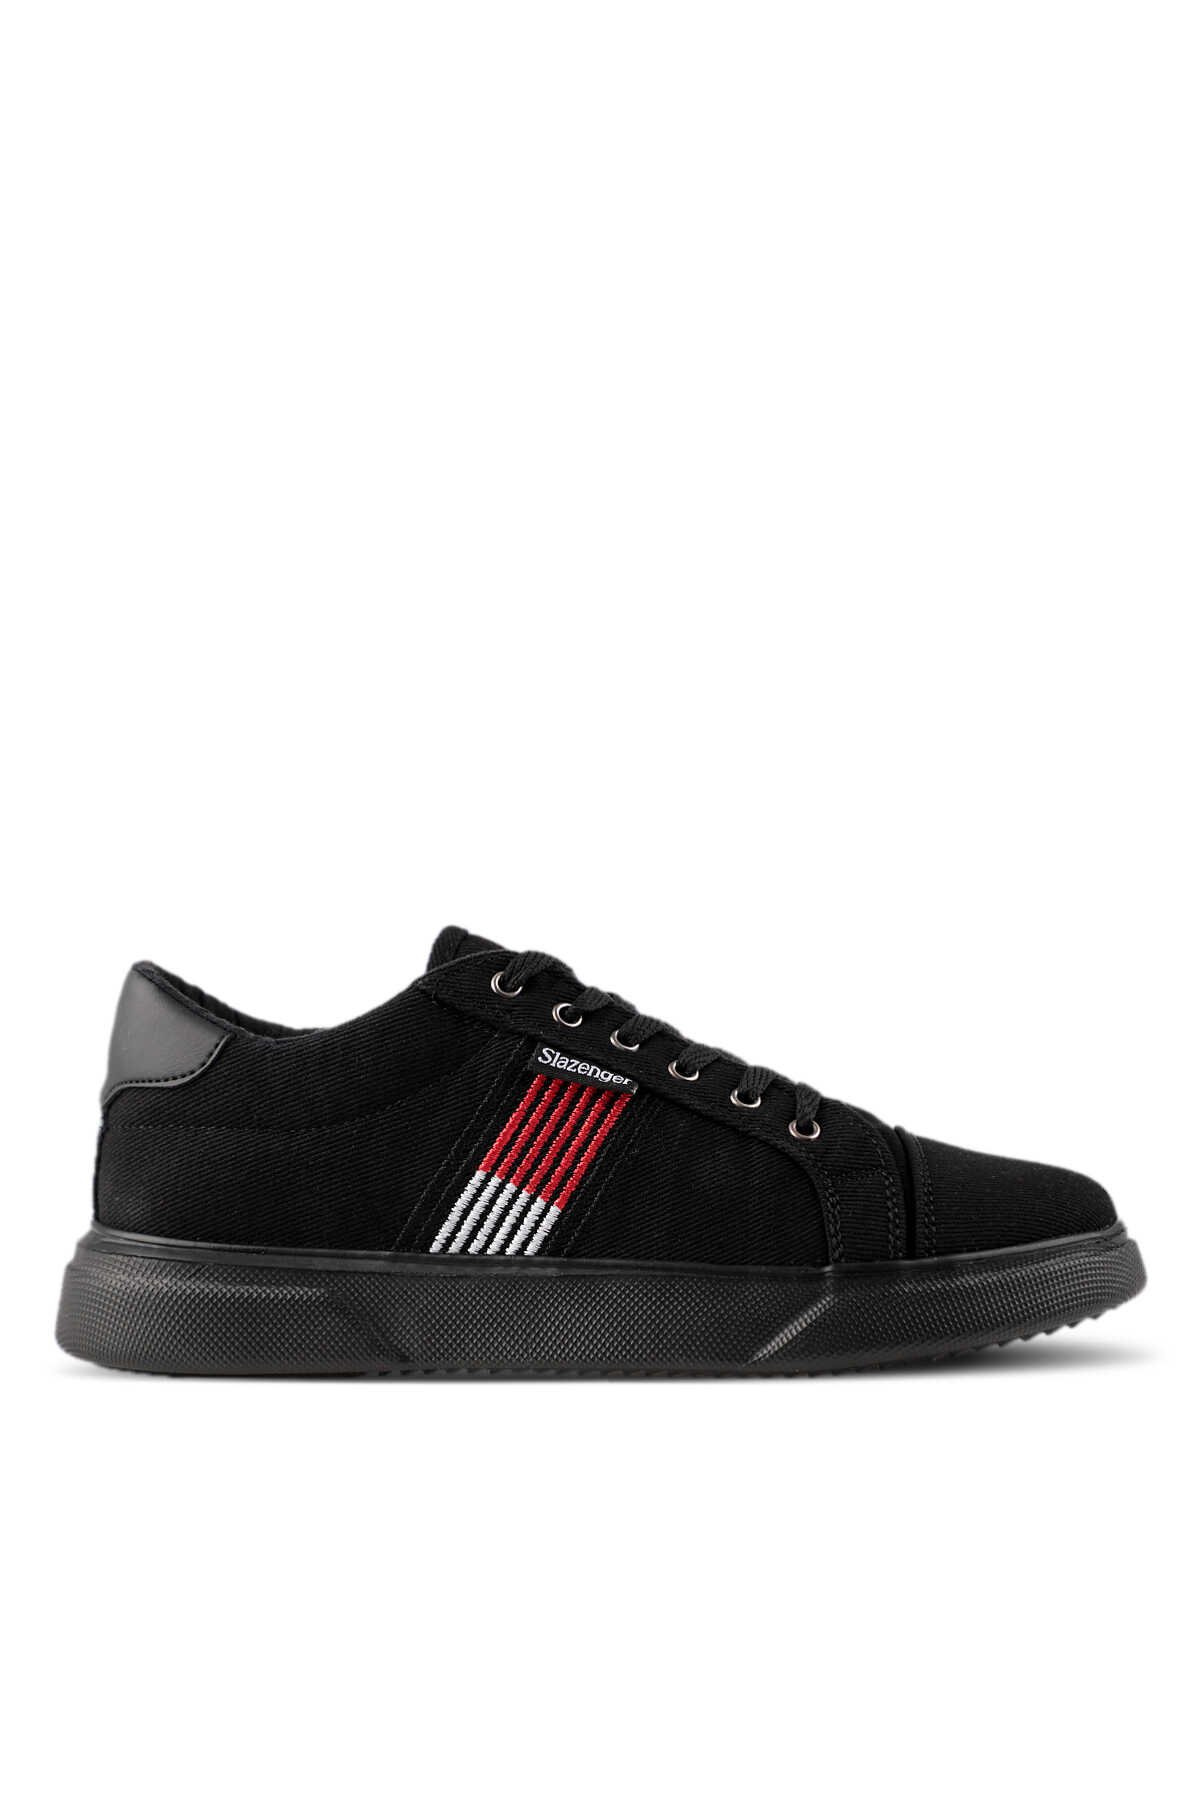 Slazenger - Slazenger DALY Sneaker Erkek Ayakkabı Siyah